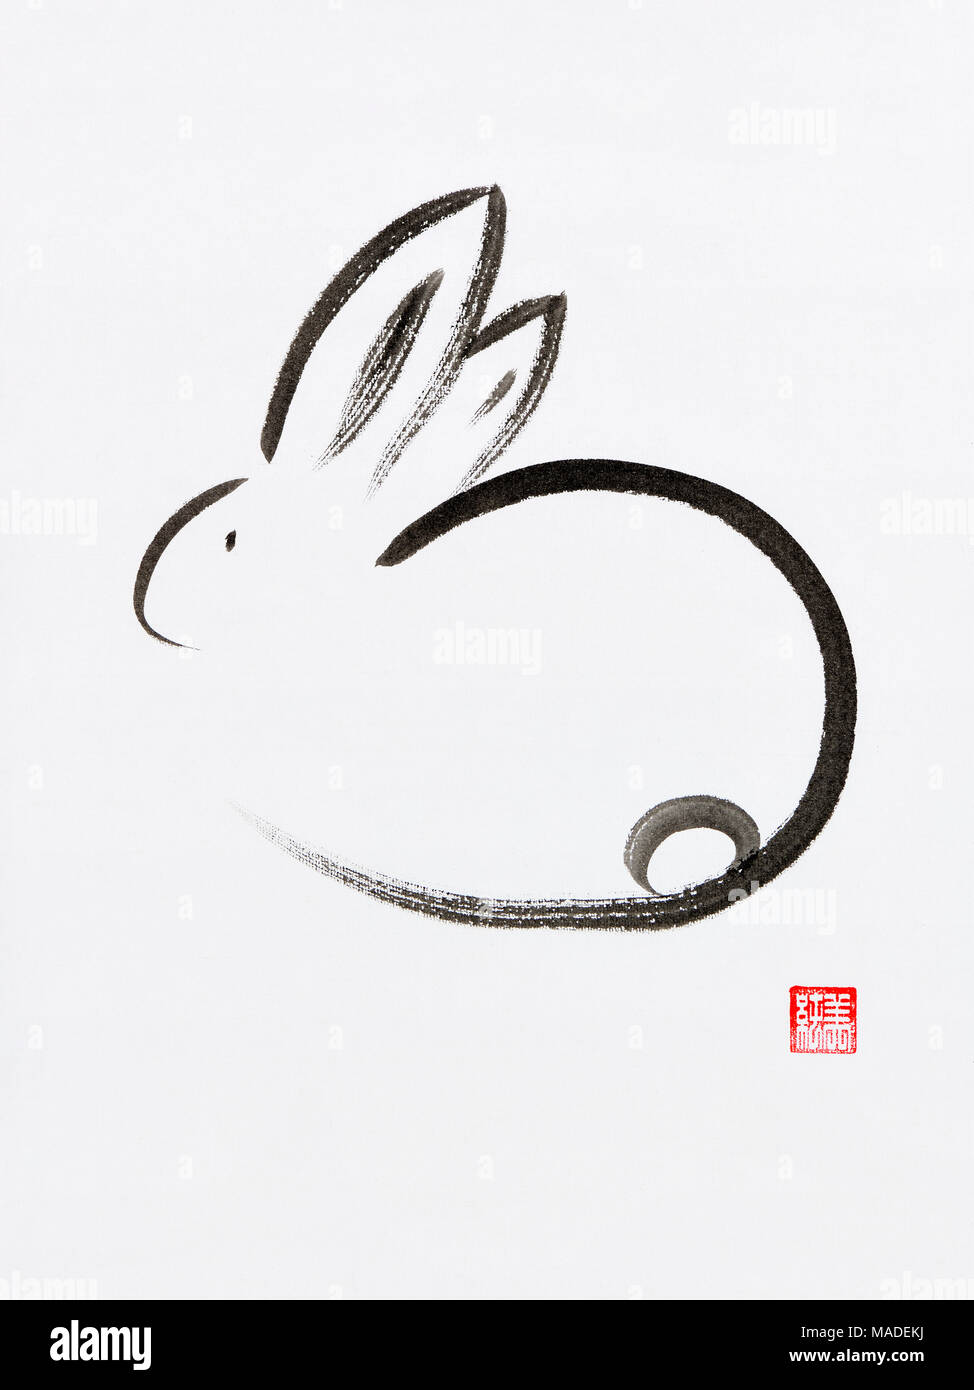 Lindo conejito minimalista artística ilustración de estilo oriental, el zen japonés Sumi-e pintura de tinta sobre papel de arroz blanco antecedentes Foto de stock